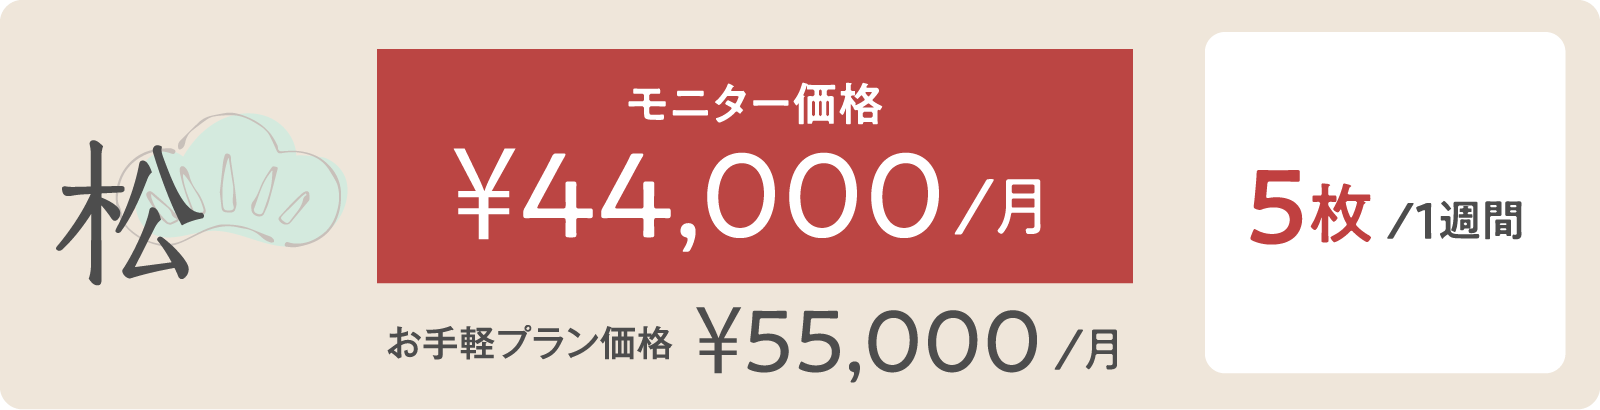 松モニター価格 ¥44,000/月 5枚/１週間